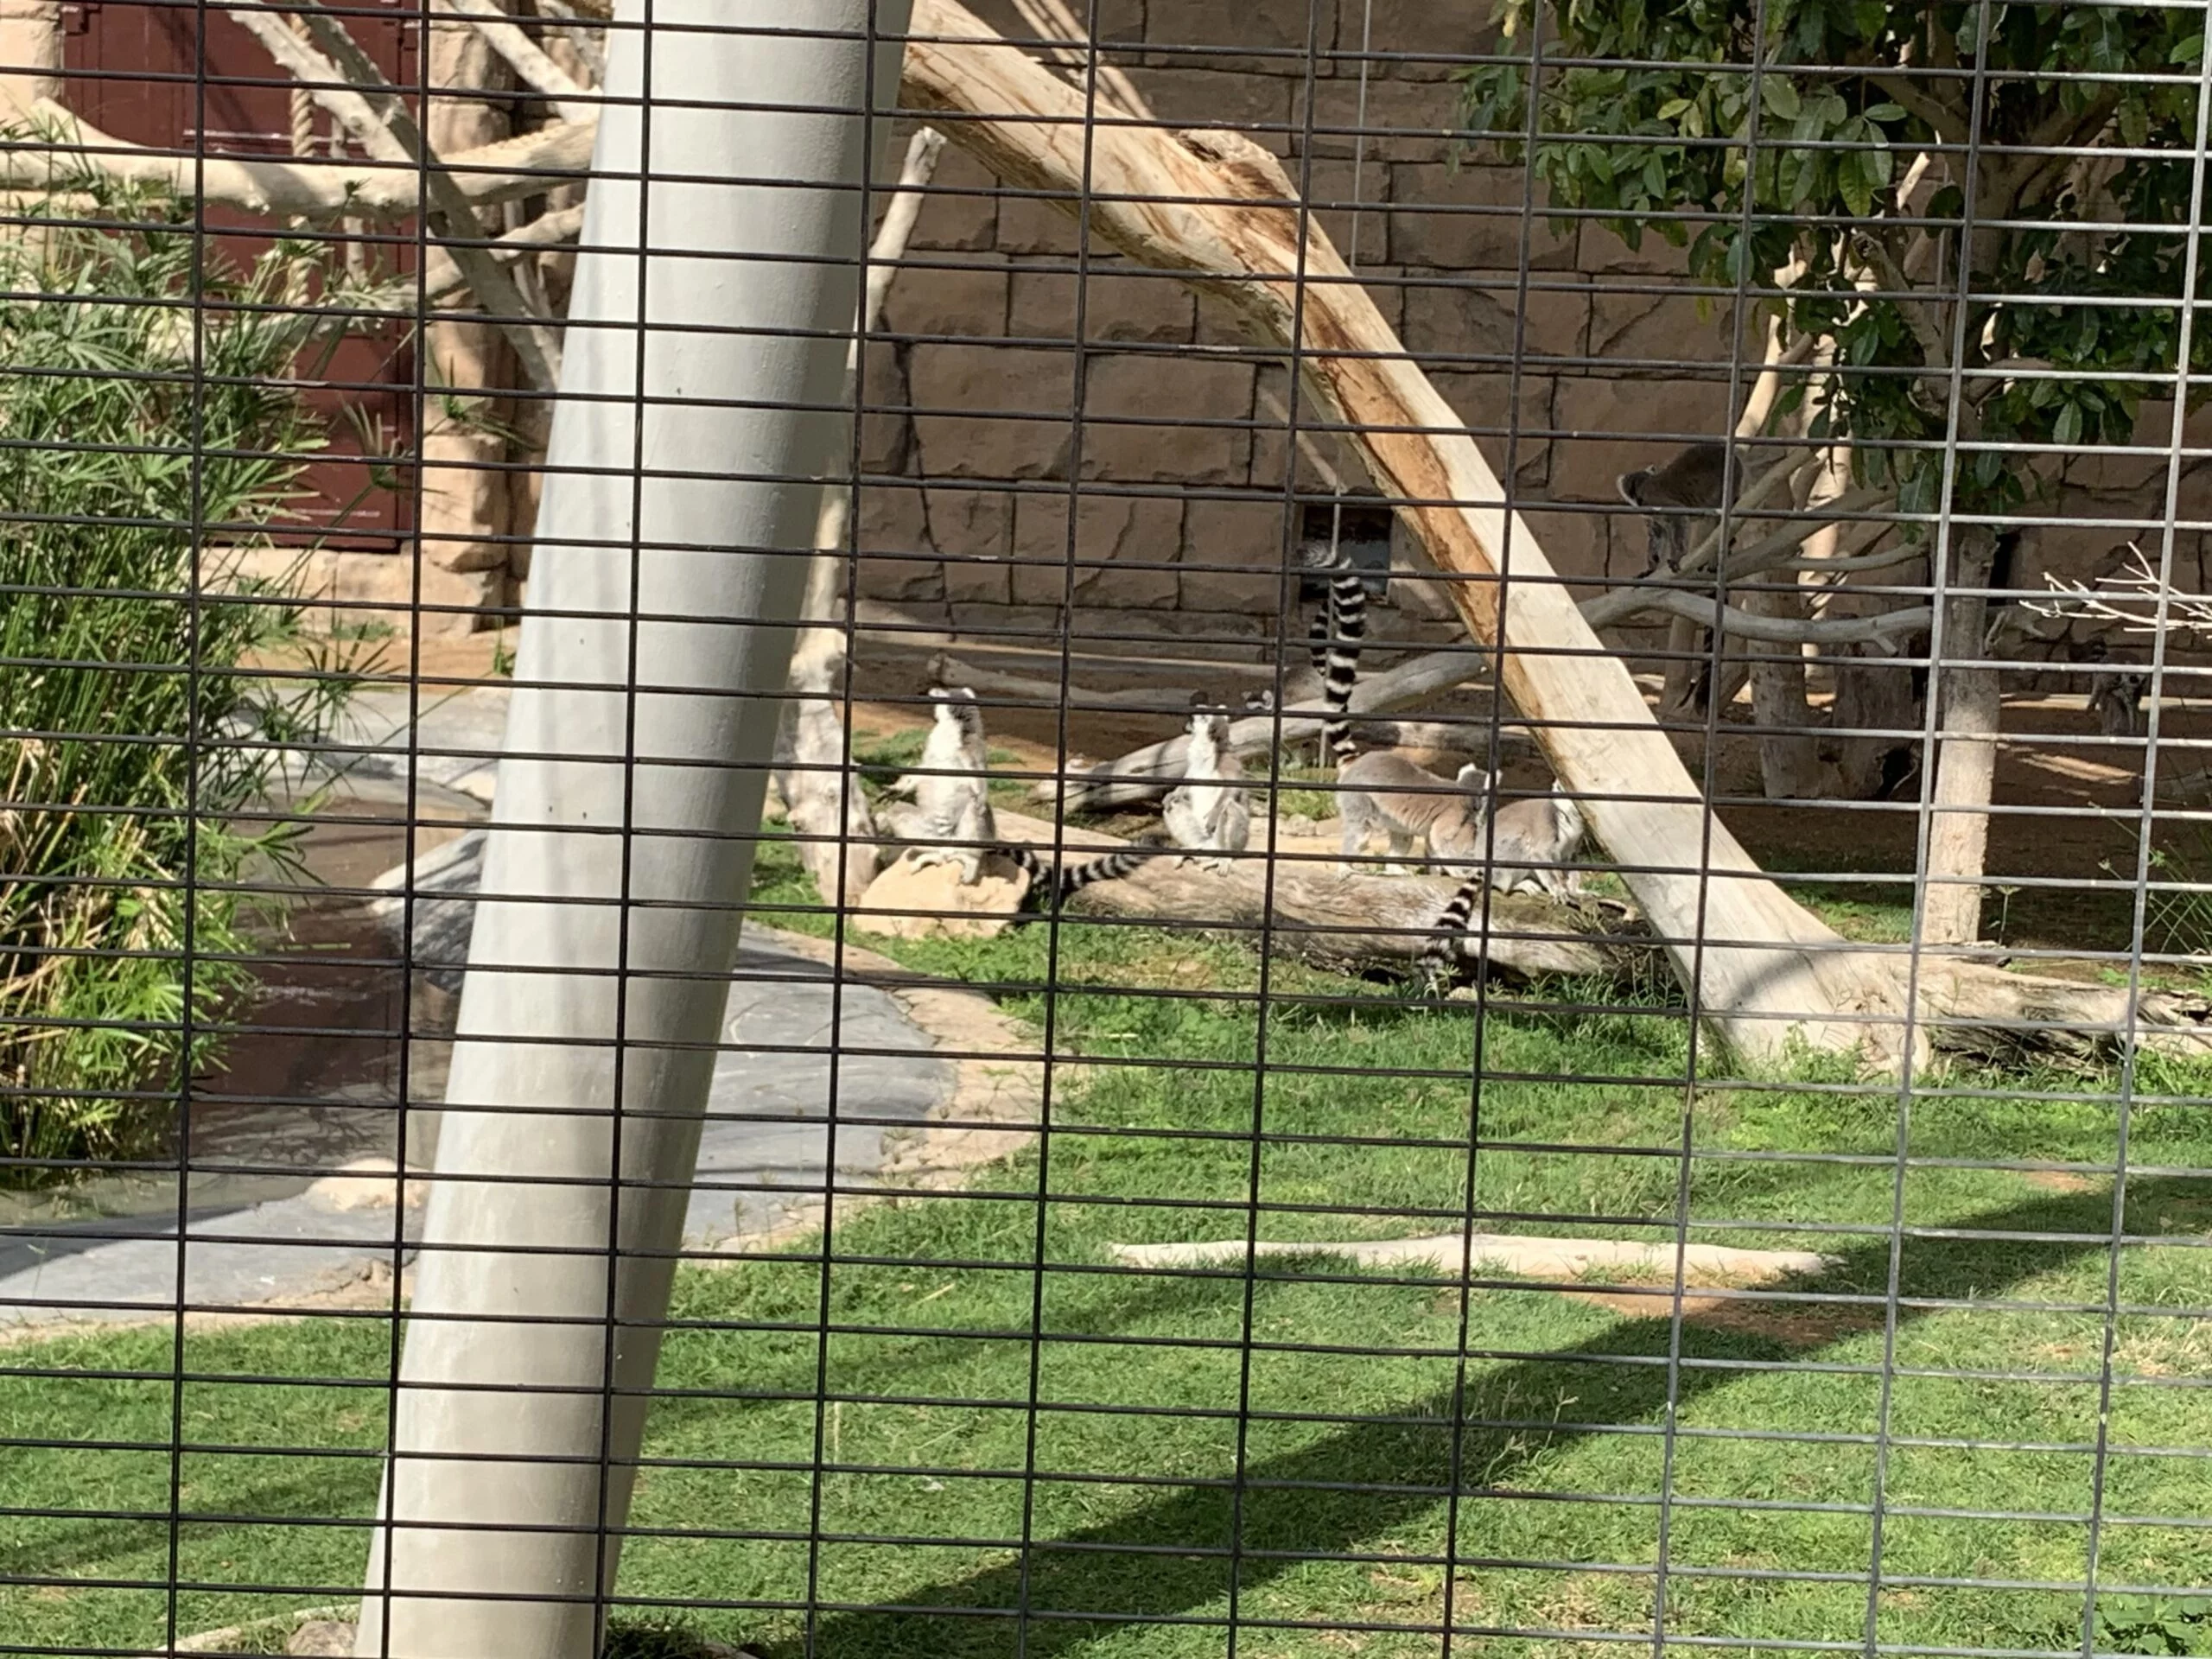 Lemur - Al Ain Zoo